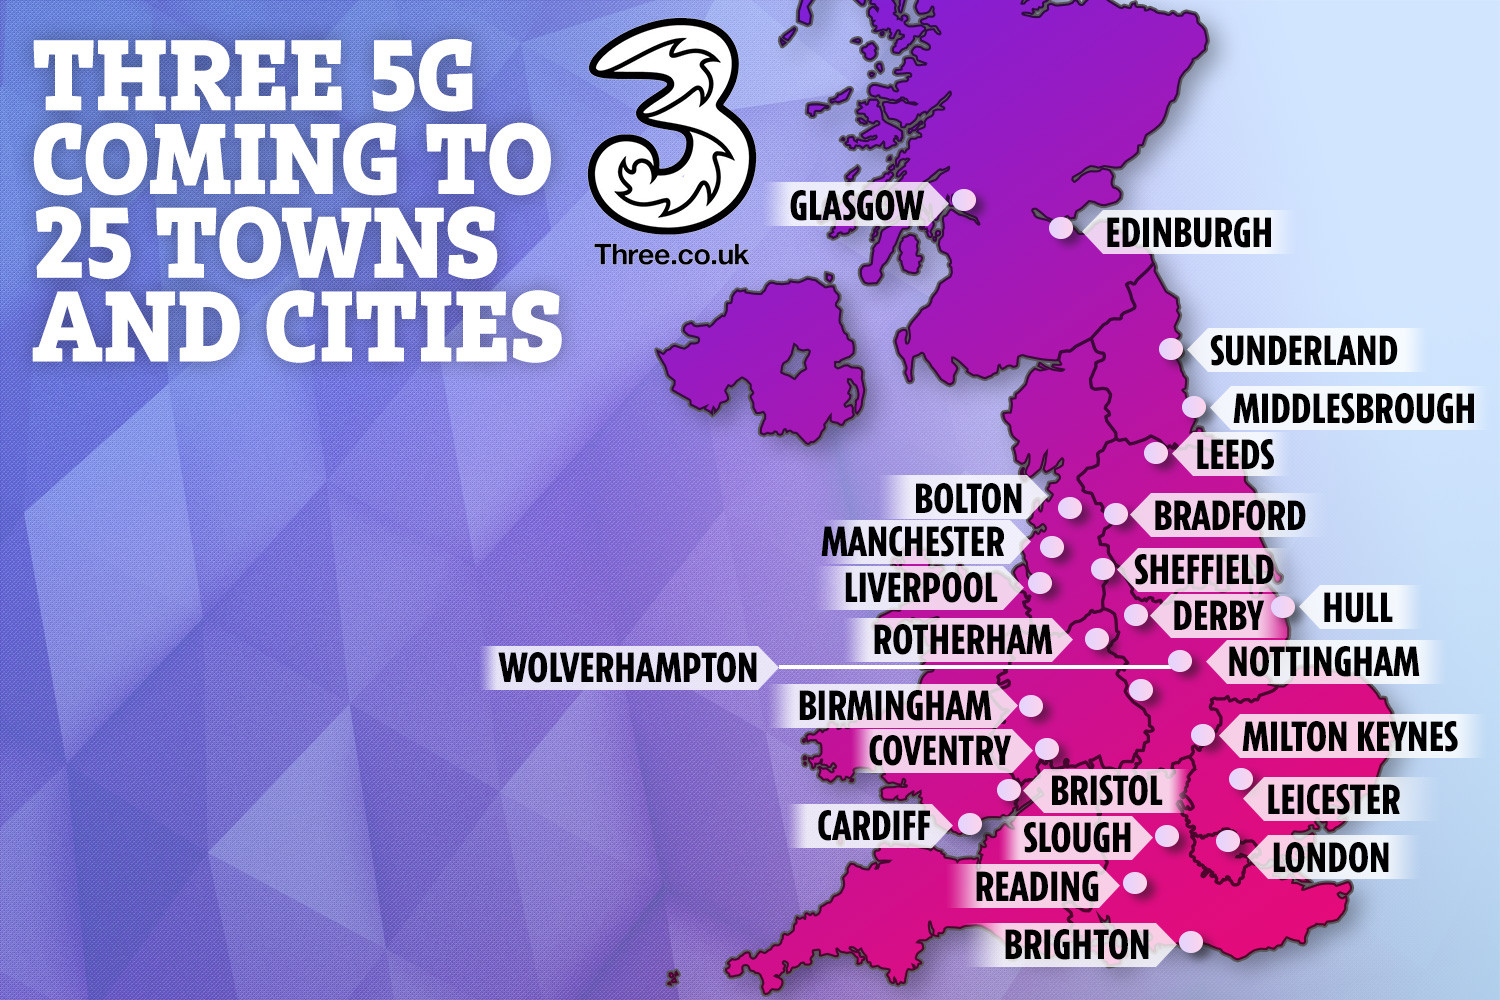  Hingga 25 kota di Inggris akan memiliki akses ke jaringan 5G Three pada akhir 2019